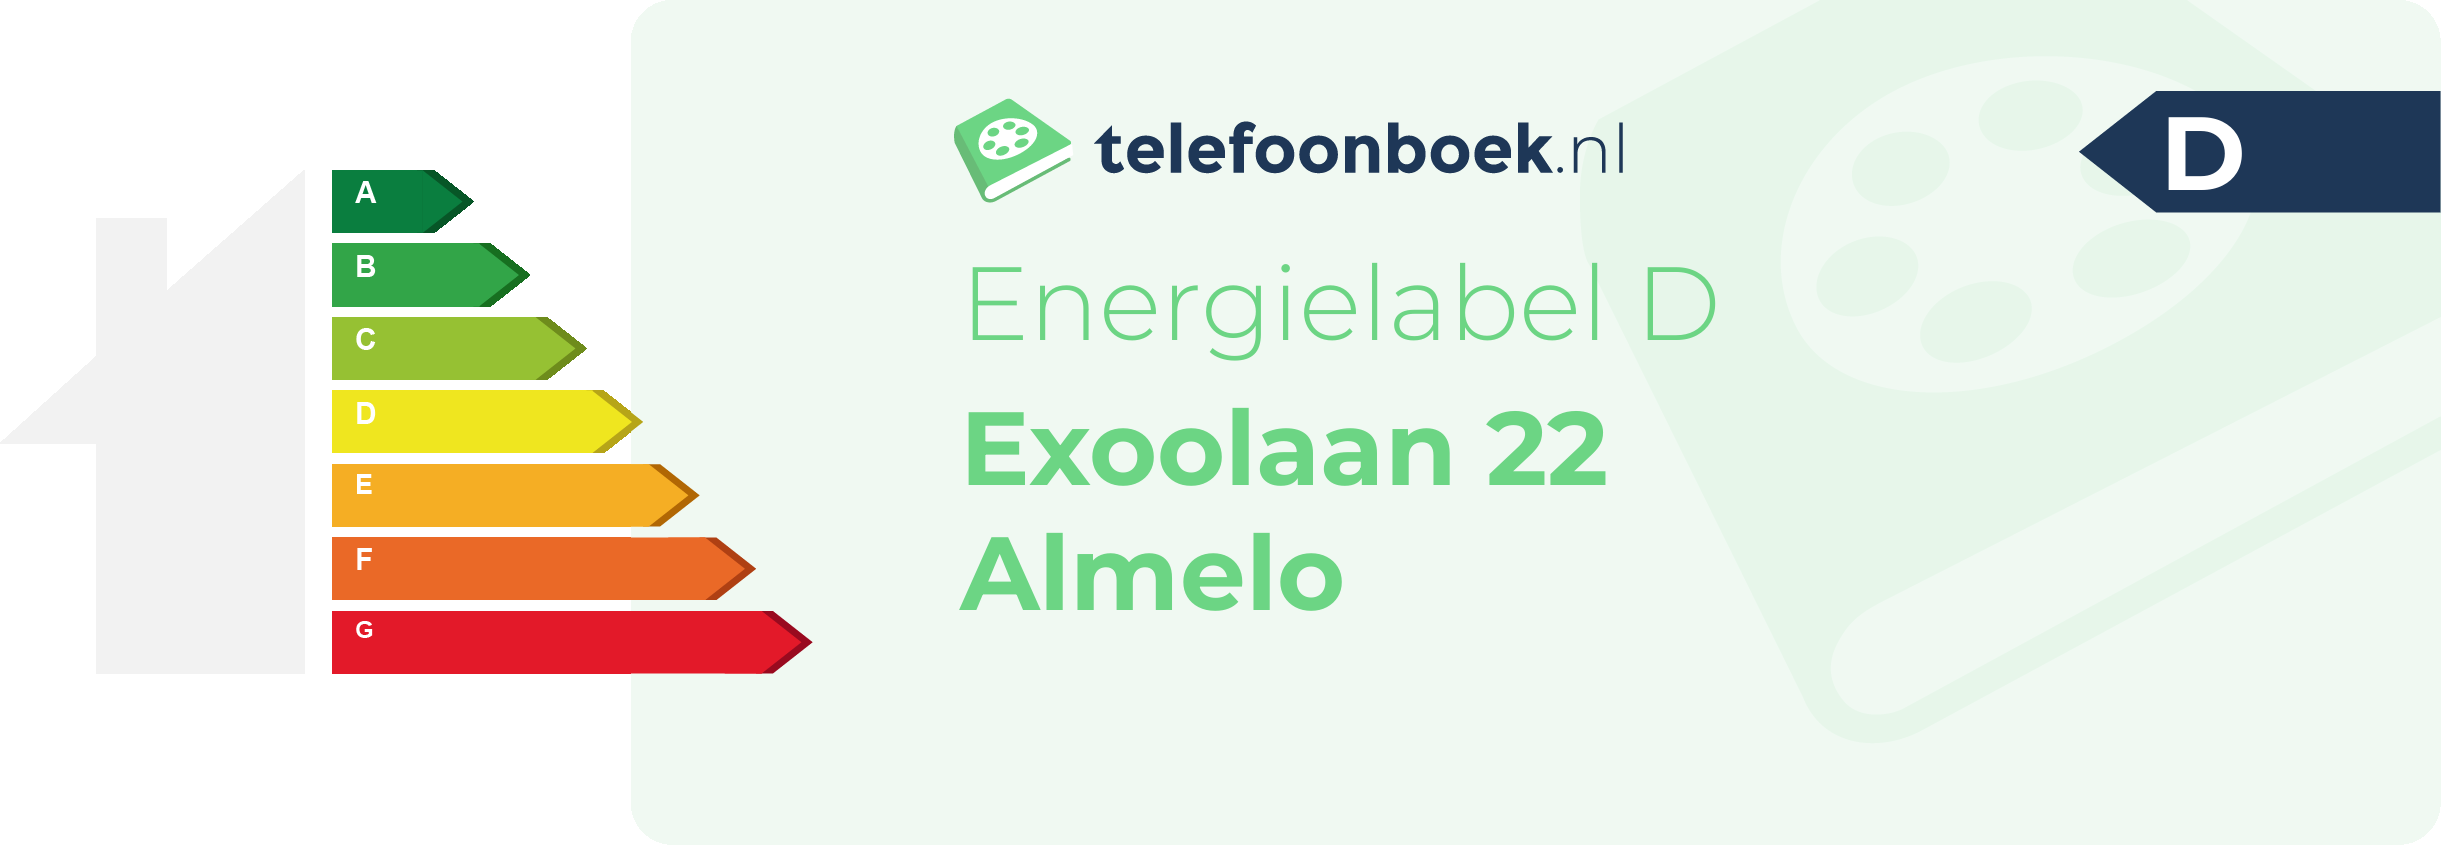 Energielabel Exoolaan 22 Almelo